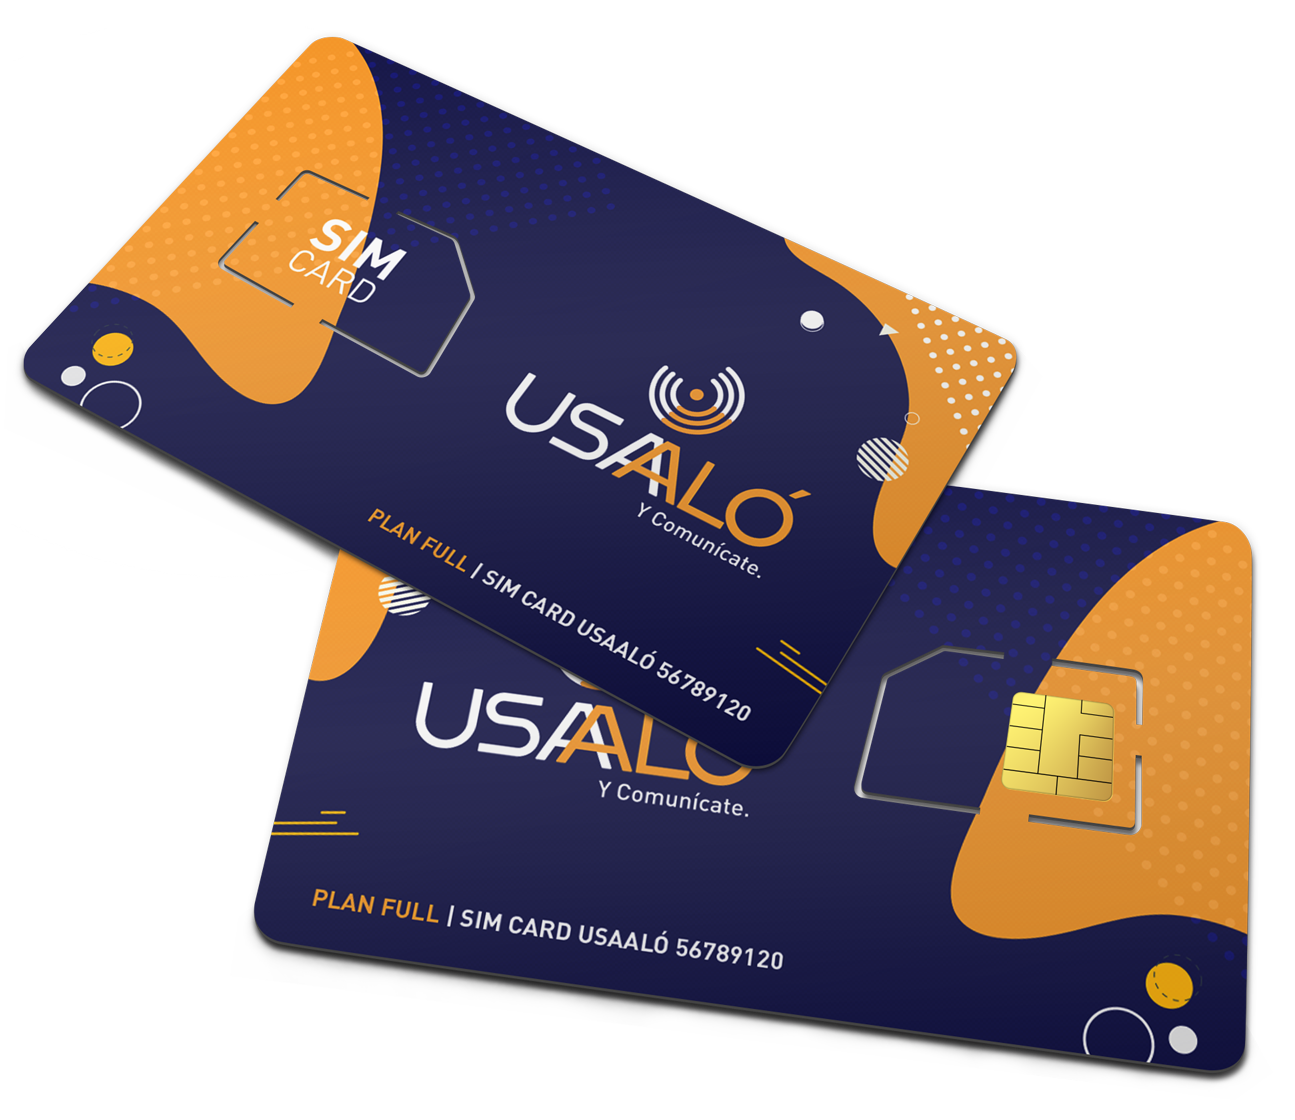 Tarjeta SIM prepagada (Móvil de EE. UU.): planes personalizados desde  $4/mes. Planes ilimitados desde $10/mes.